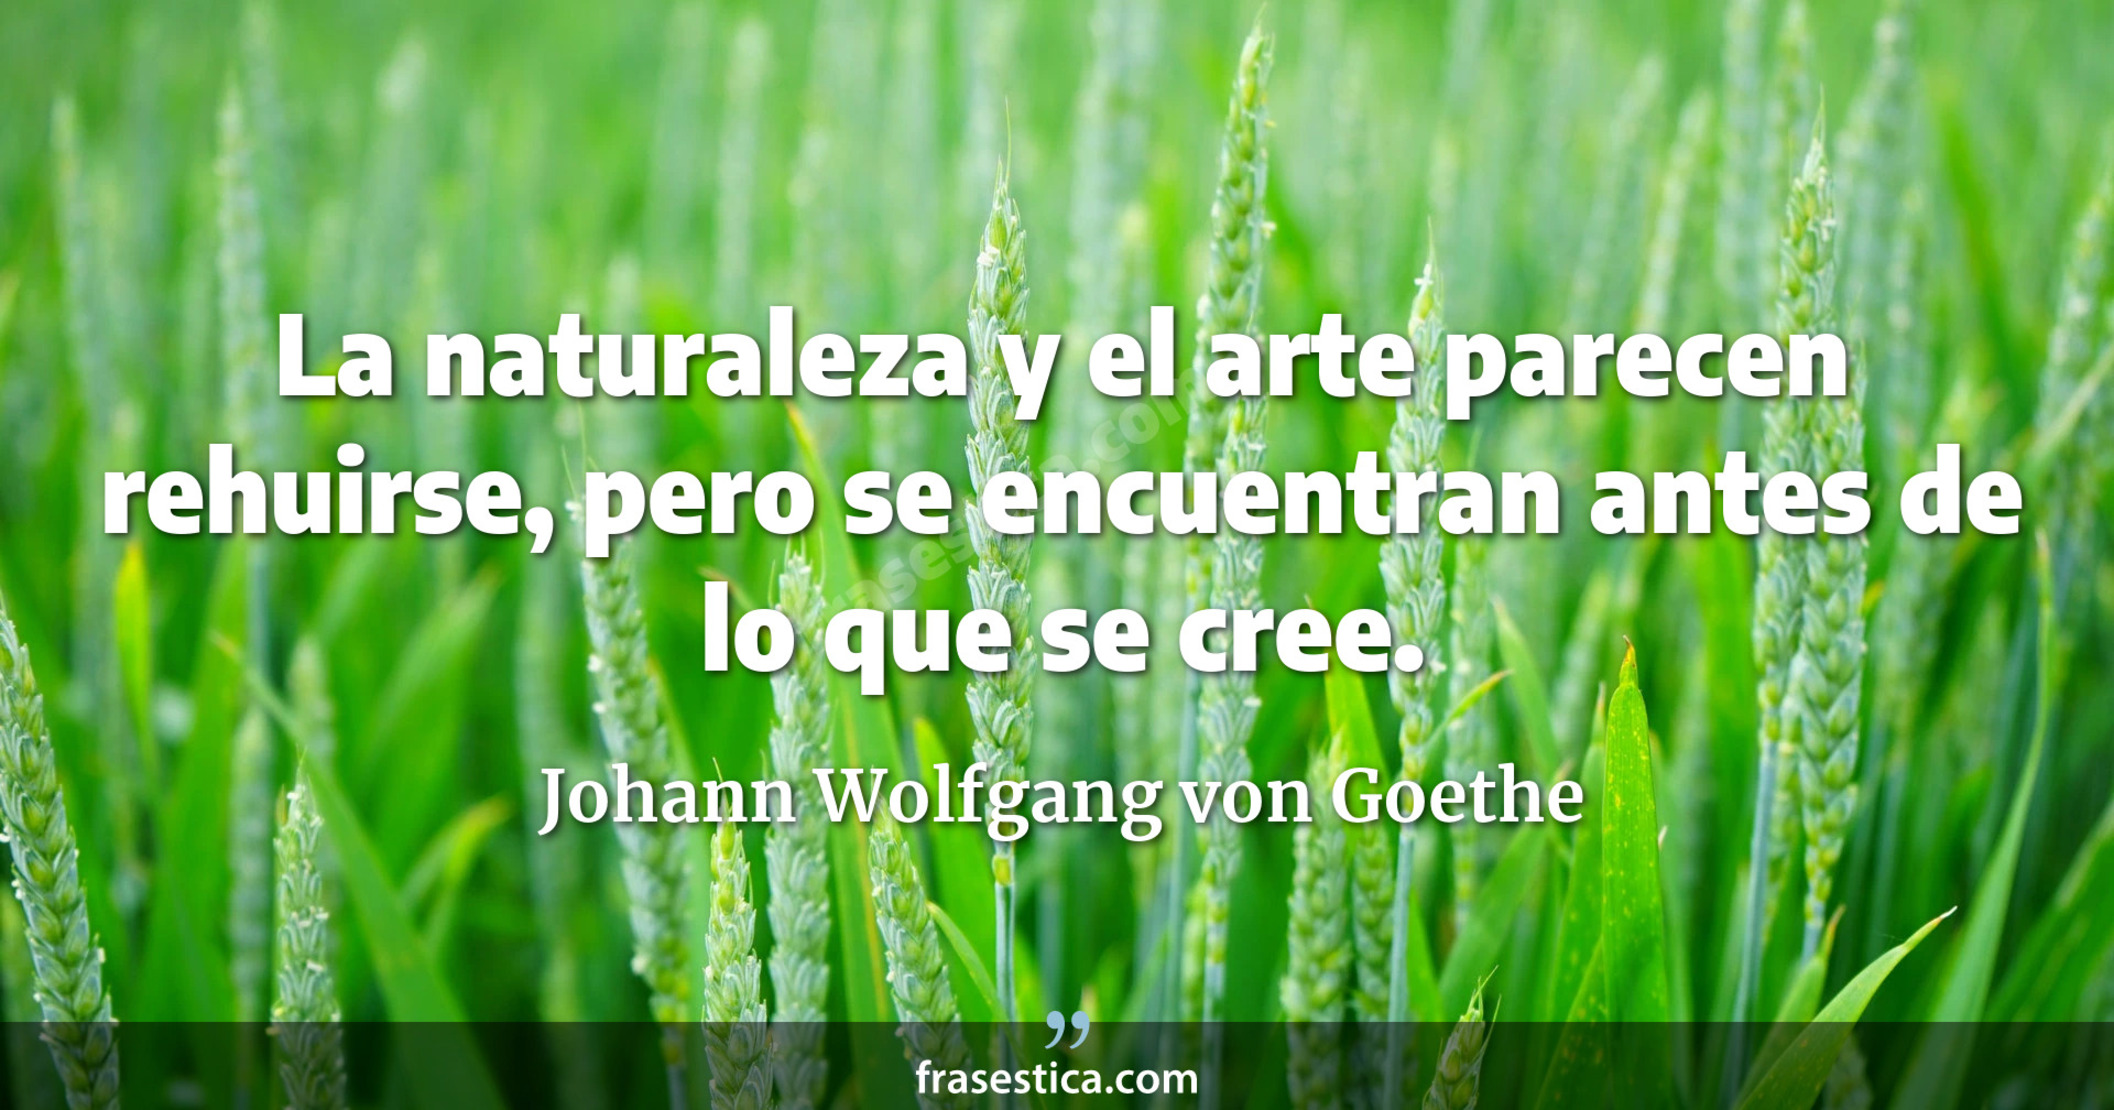 La naturaleza y el arte parecen rehuirse, pero se encuentran antes de lo que se cree. - Johann Wolfgang von Goethe